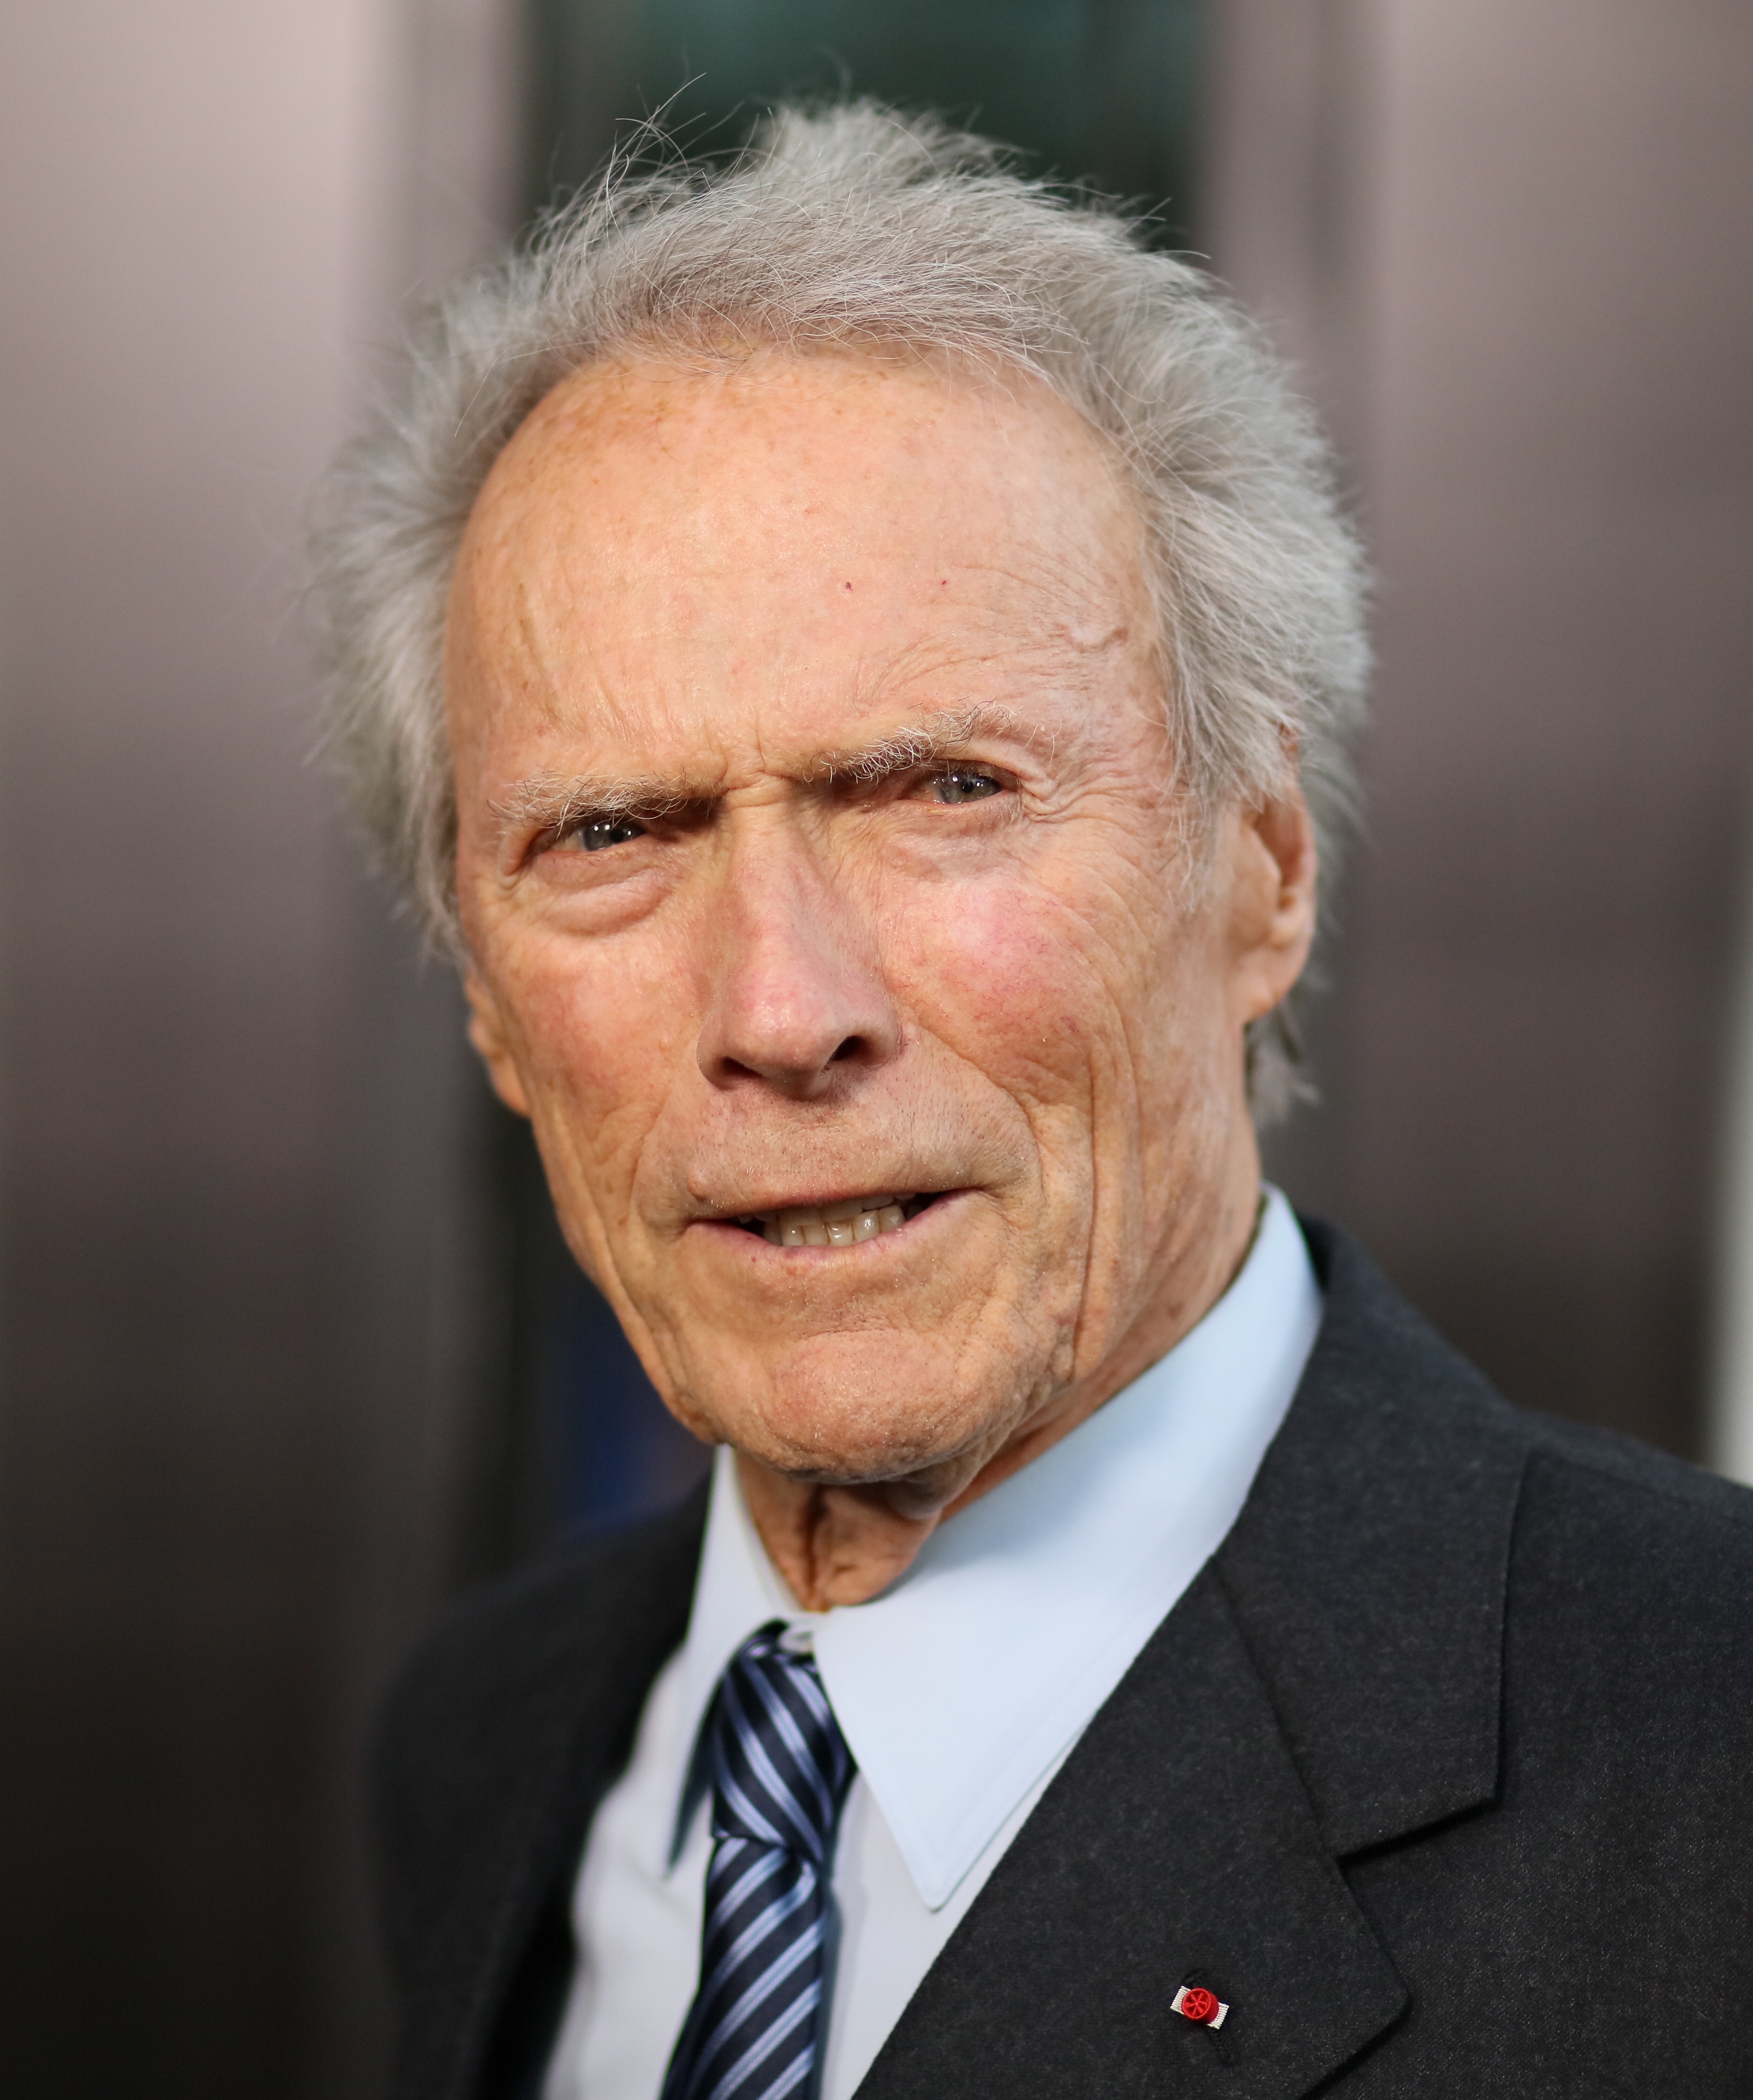 Clint Eastwood lors de la projection de 'Sully' à Los Angeles en 2016 | Source : Getty Images